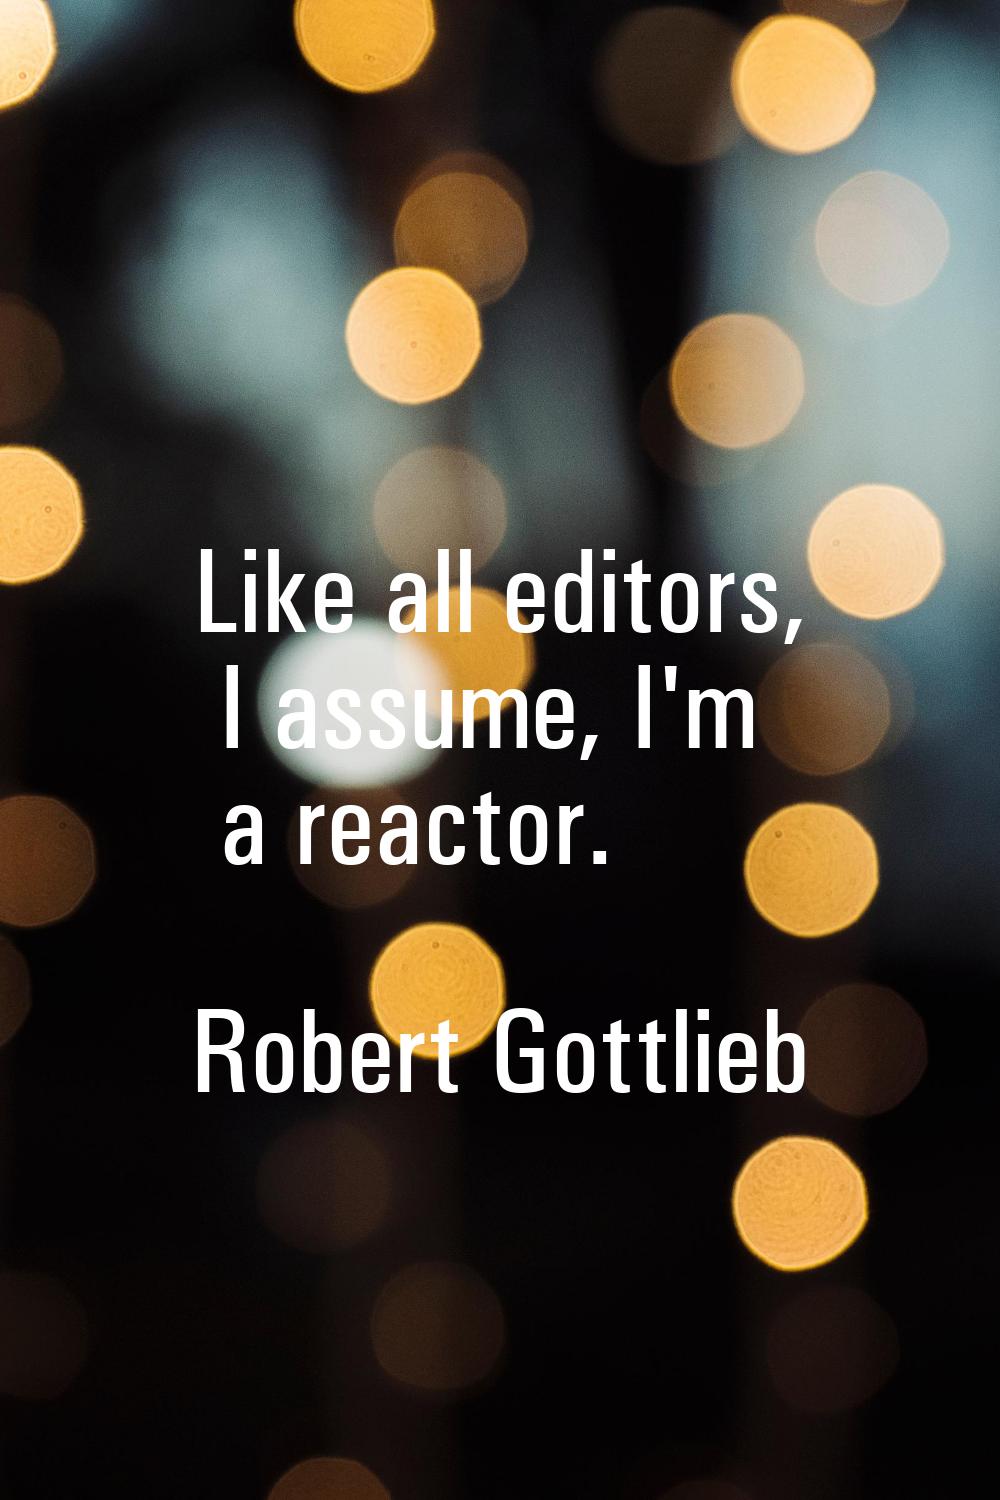 Like all editors, I assume, I'm a reactor.